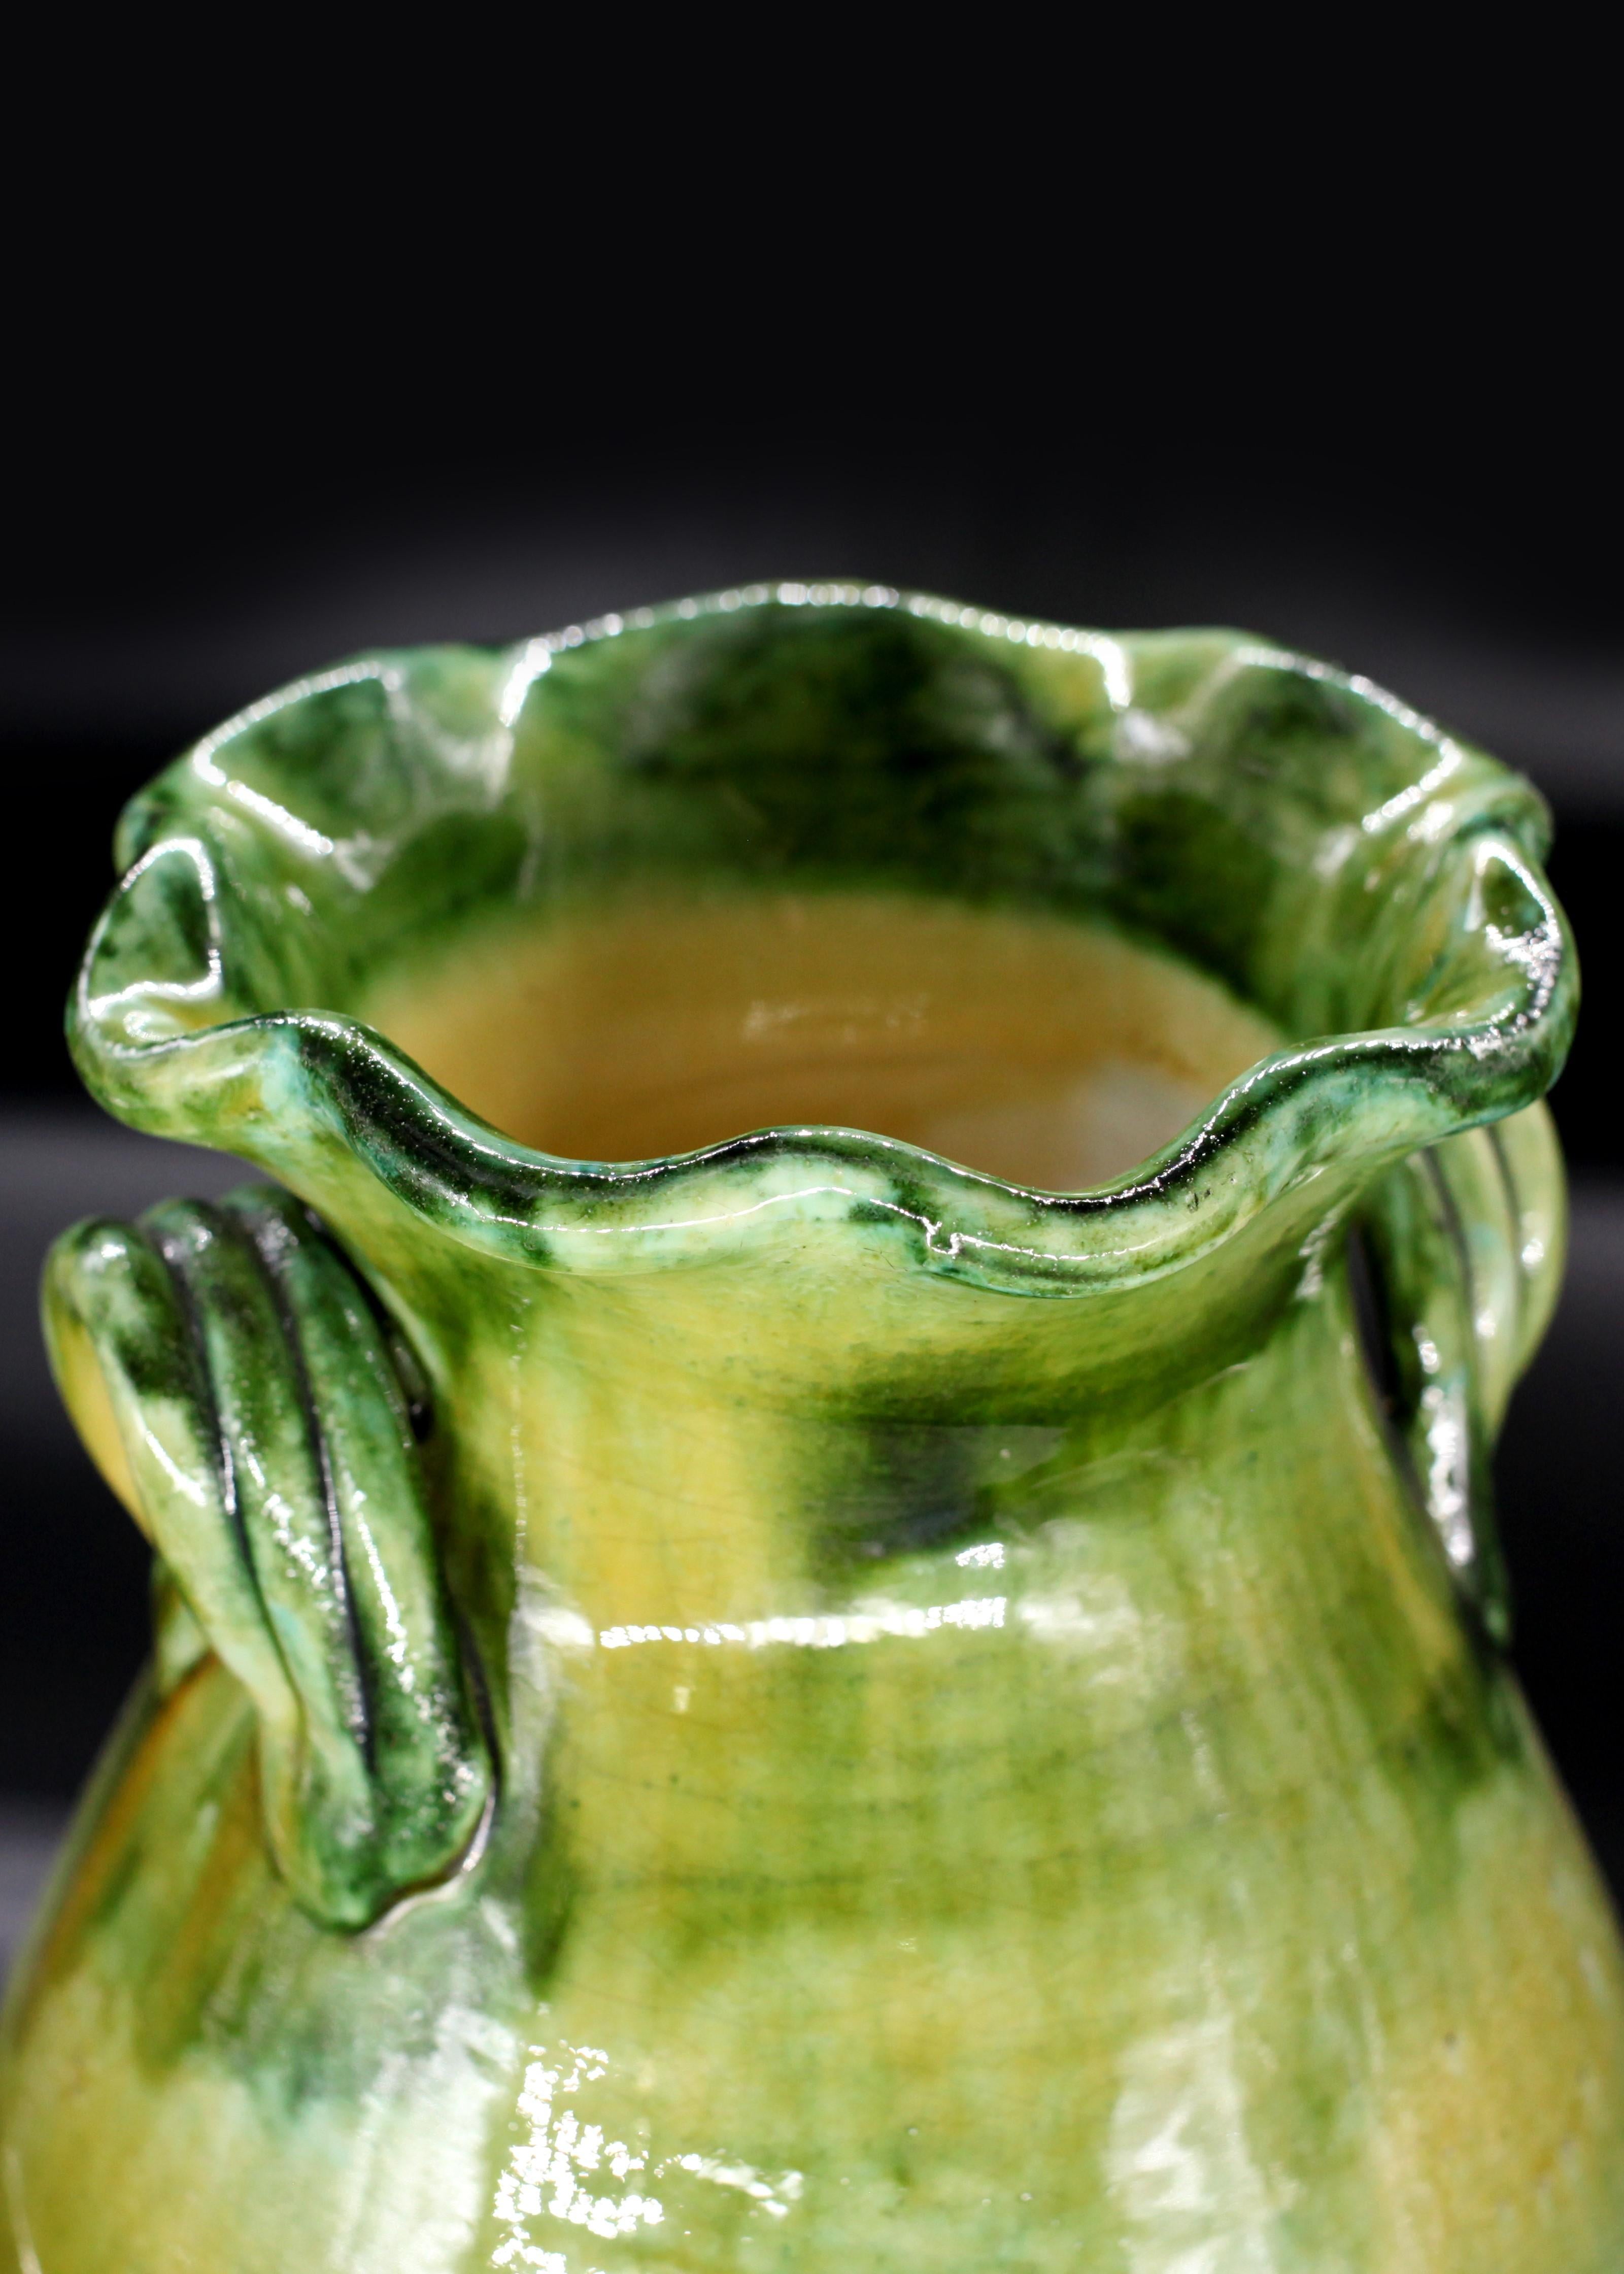 Ce vase émaillé de Vietri est un joyau de l'art italien du XXe siècle. Sculpté à la perfection et émaillé pour plus d'esthétique, c'est plus qu'un simple support pour vos fleurs, c'est une célébration de l'art de la céramique italienne.

ÉTAT : TRÈS